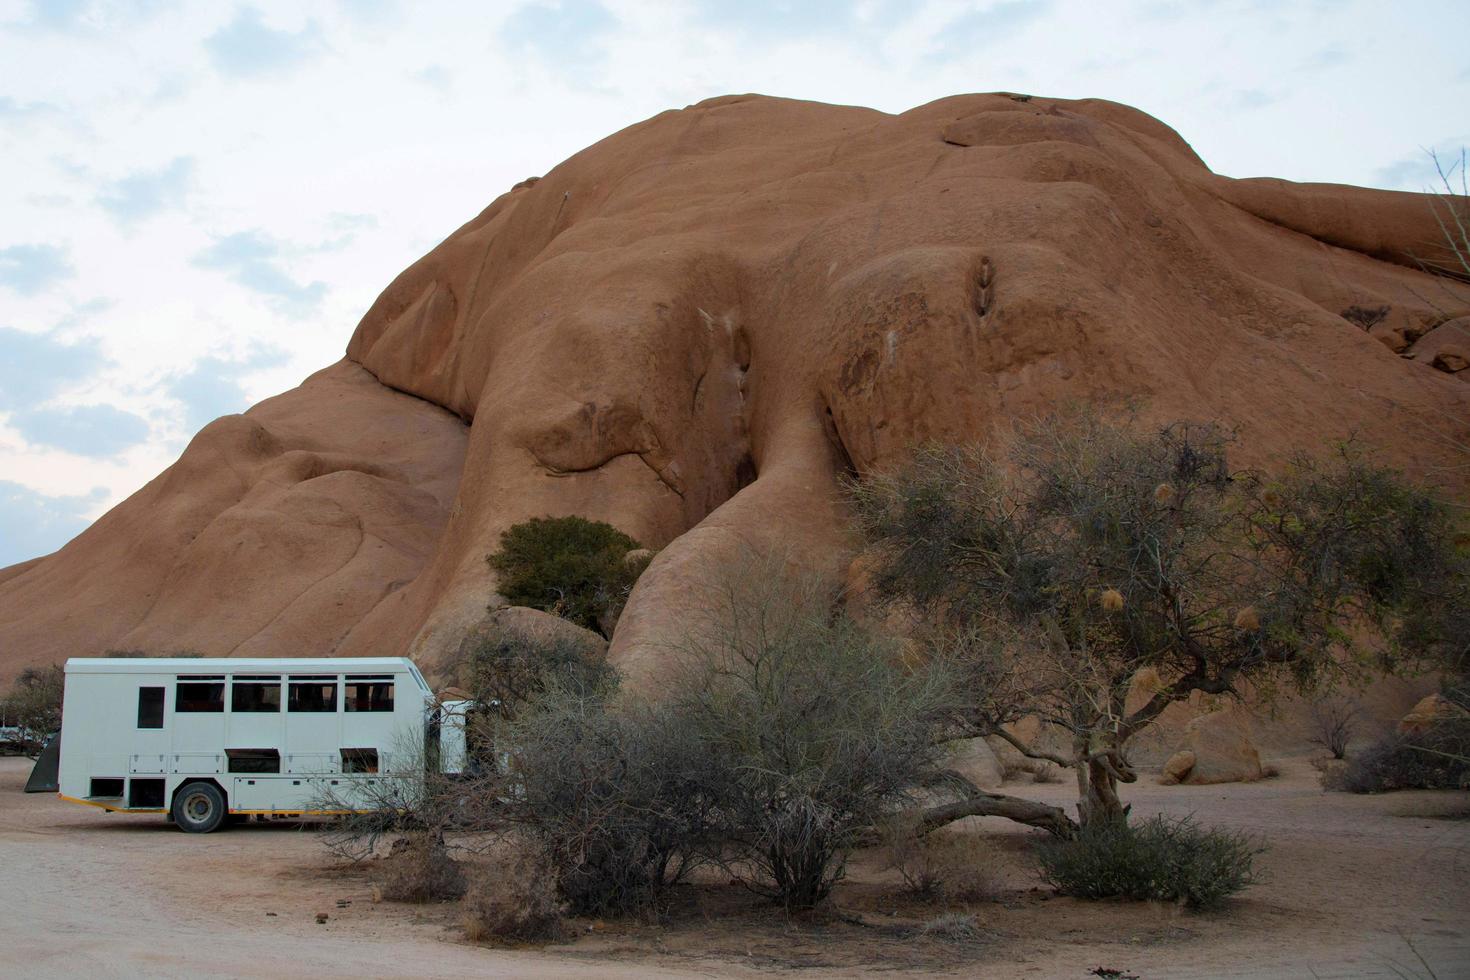 avontuurlijke reizen in afrika. witte vrachtwagen met een prachtig landschap in damaraland, namibië. foto